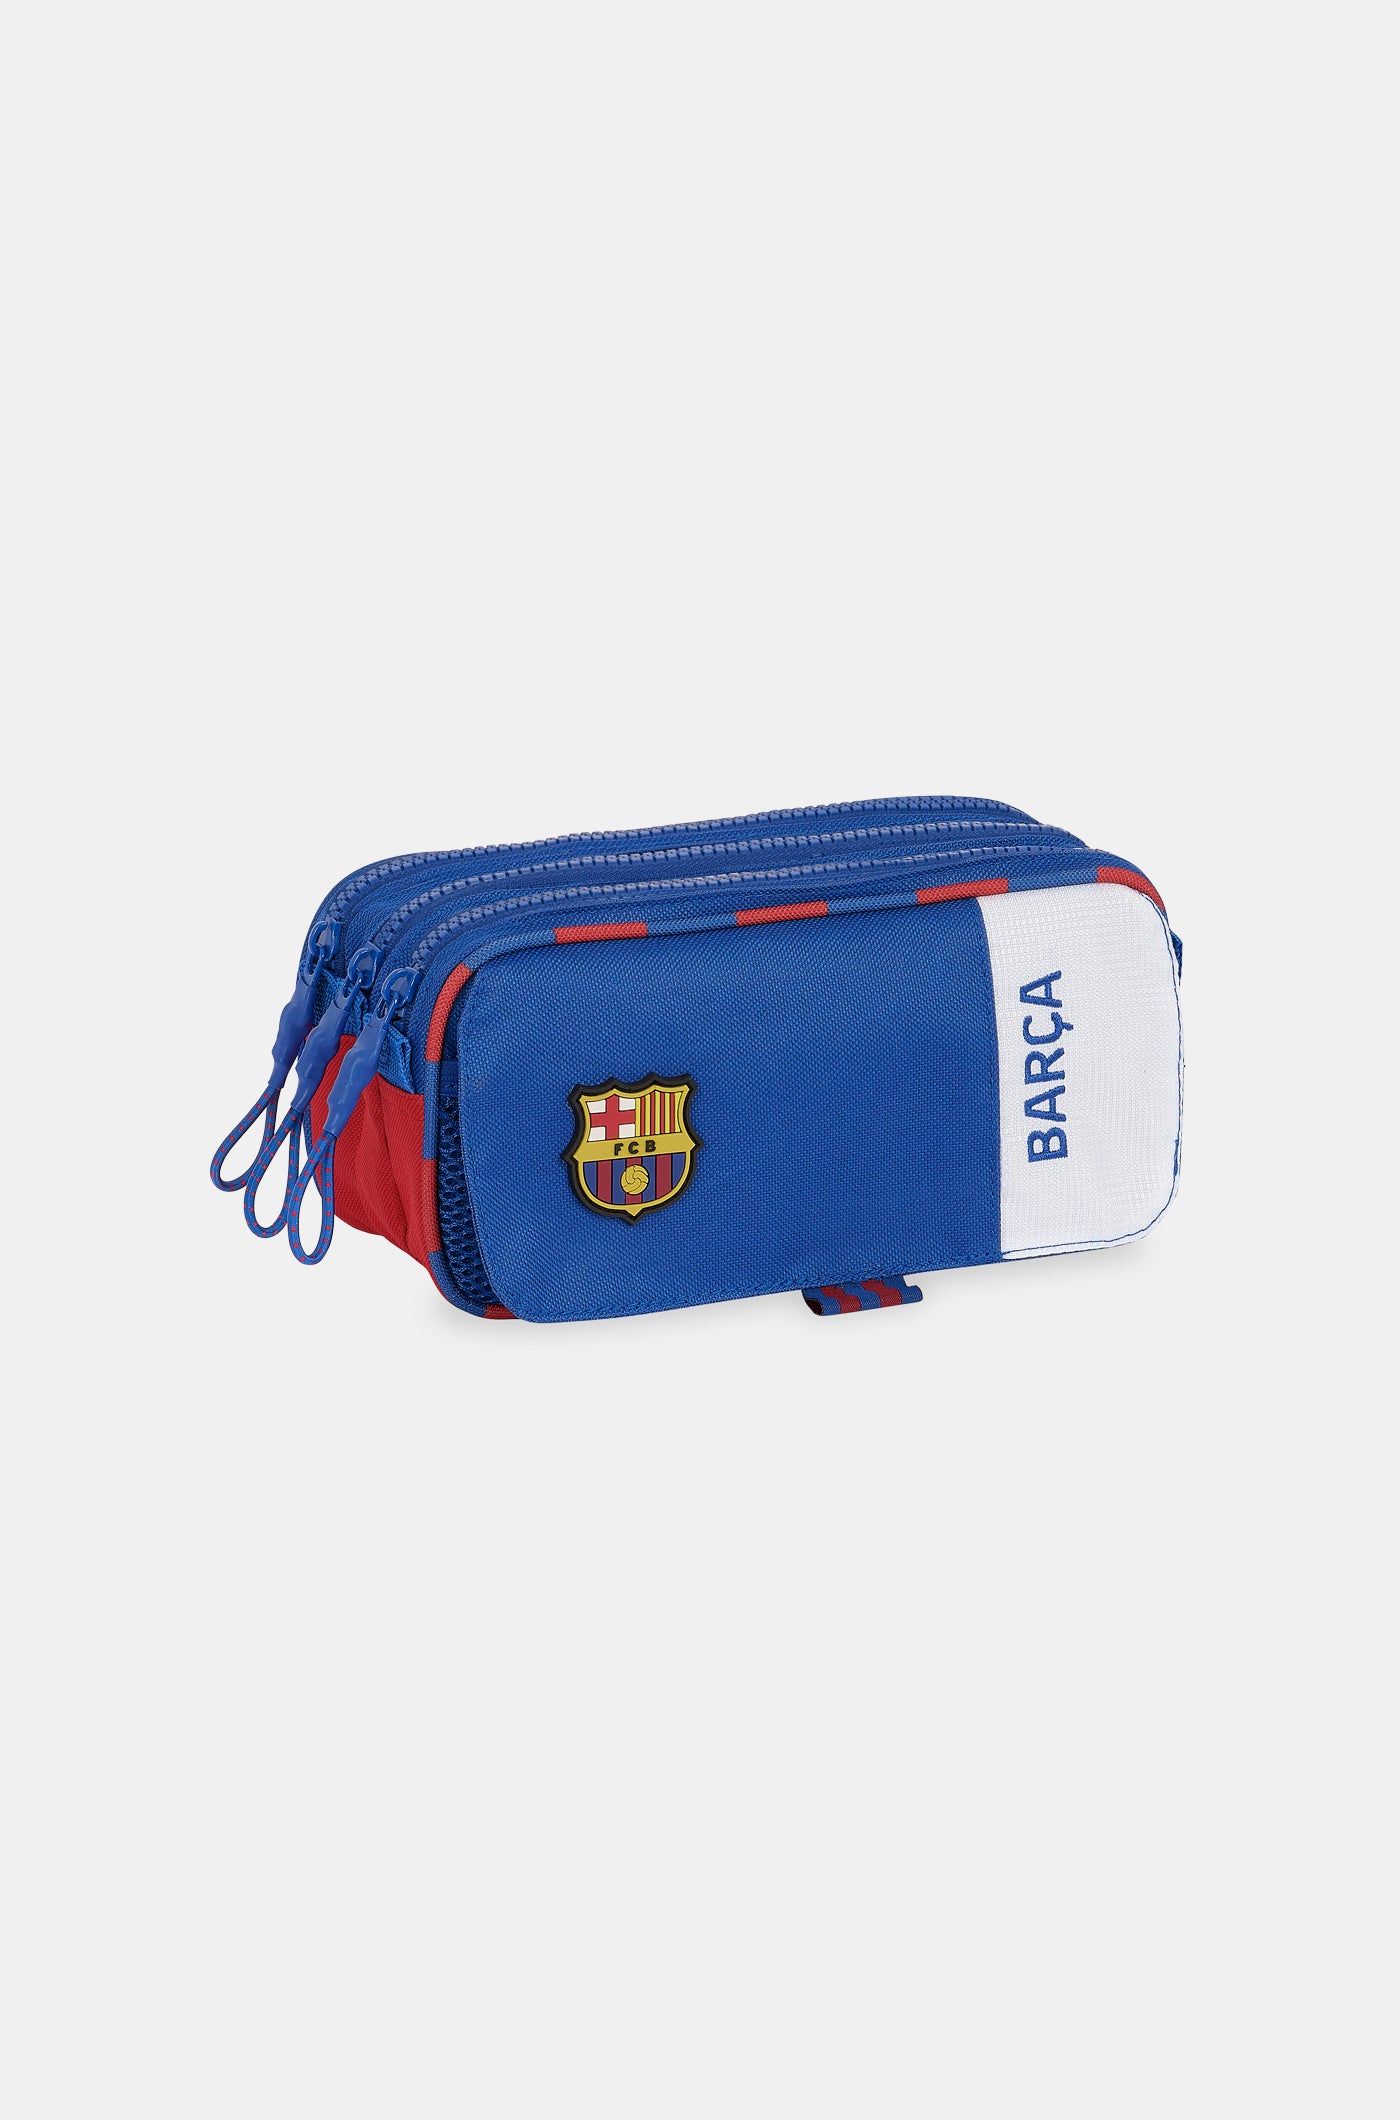 Kits – Barça Official Store Spotify Camp Nou